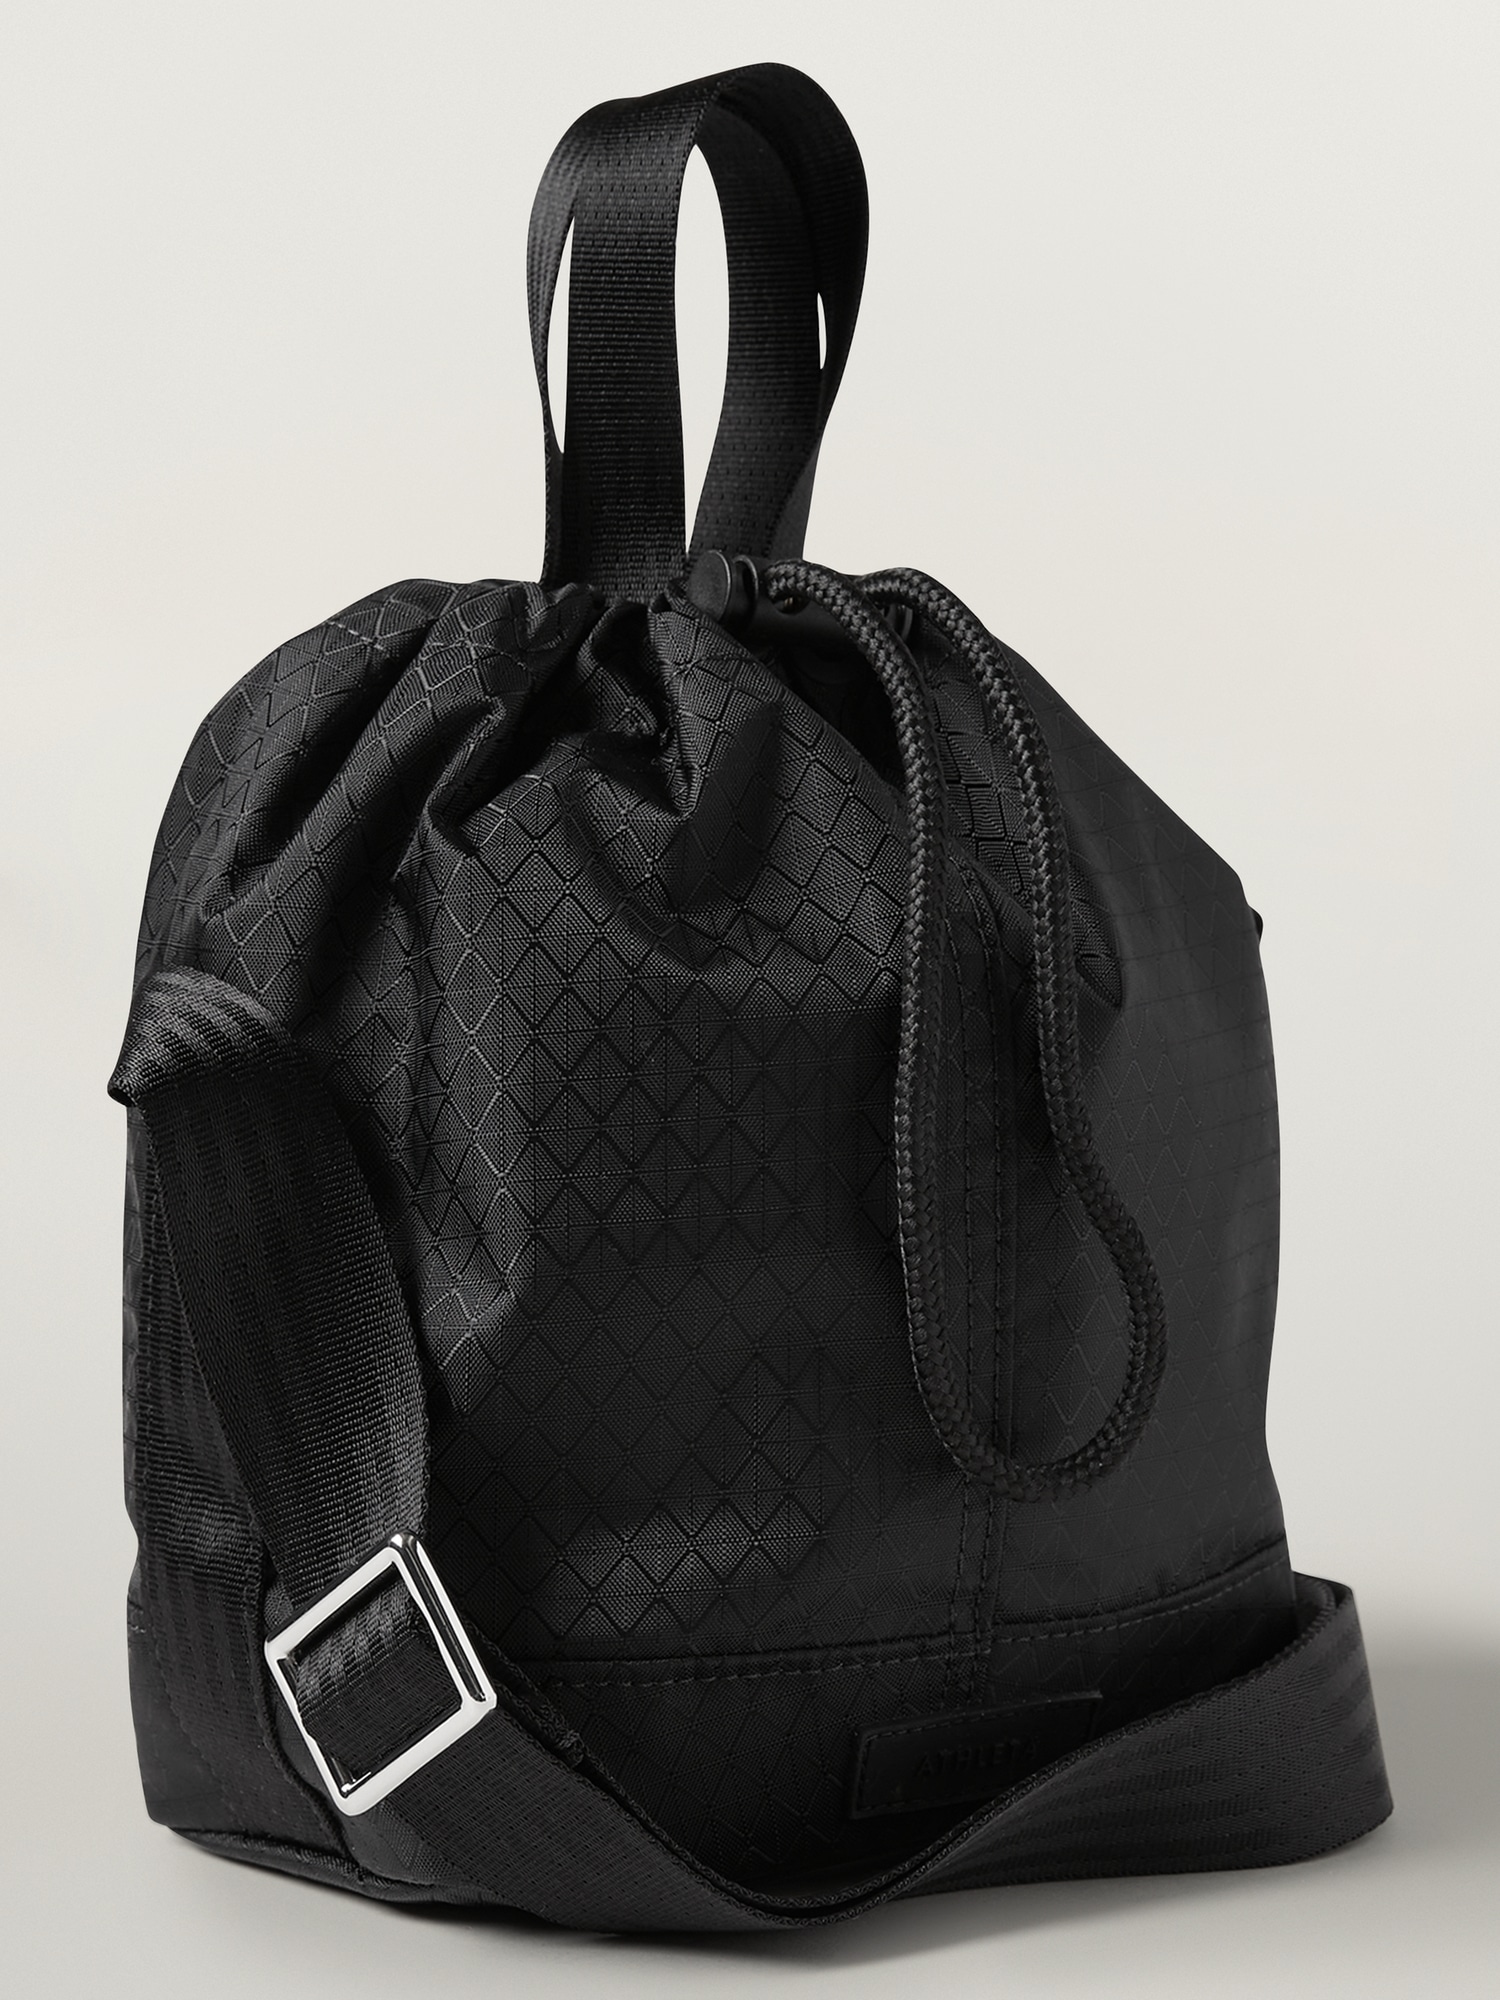 Excursion Crossbody Bucket Bag | Athleta